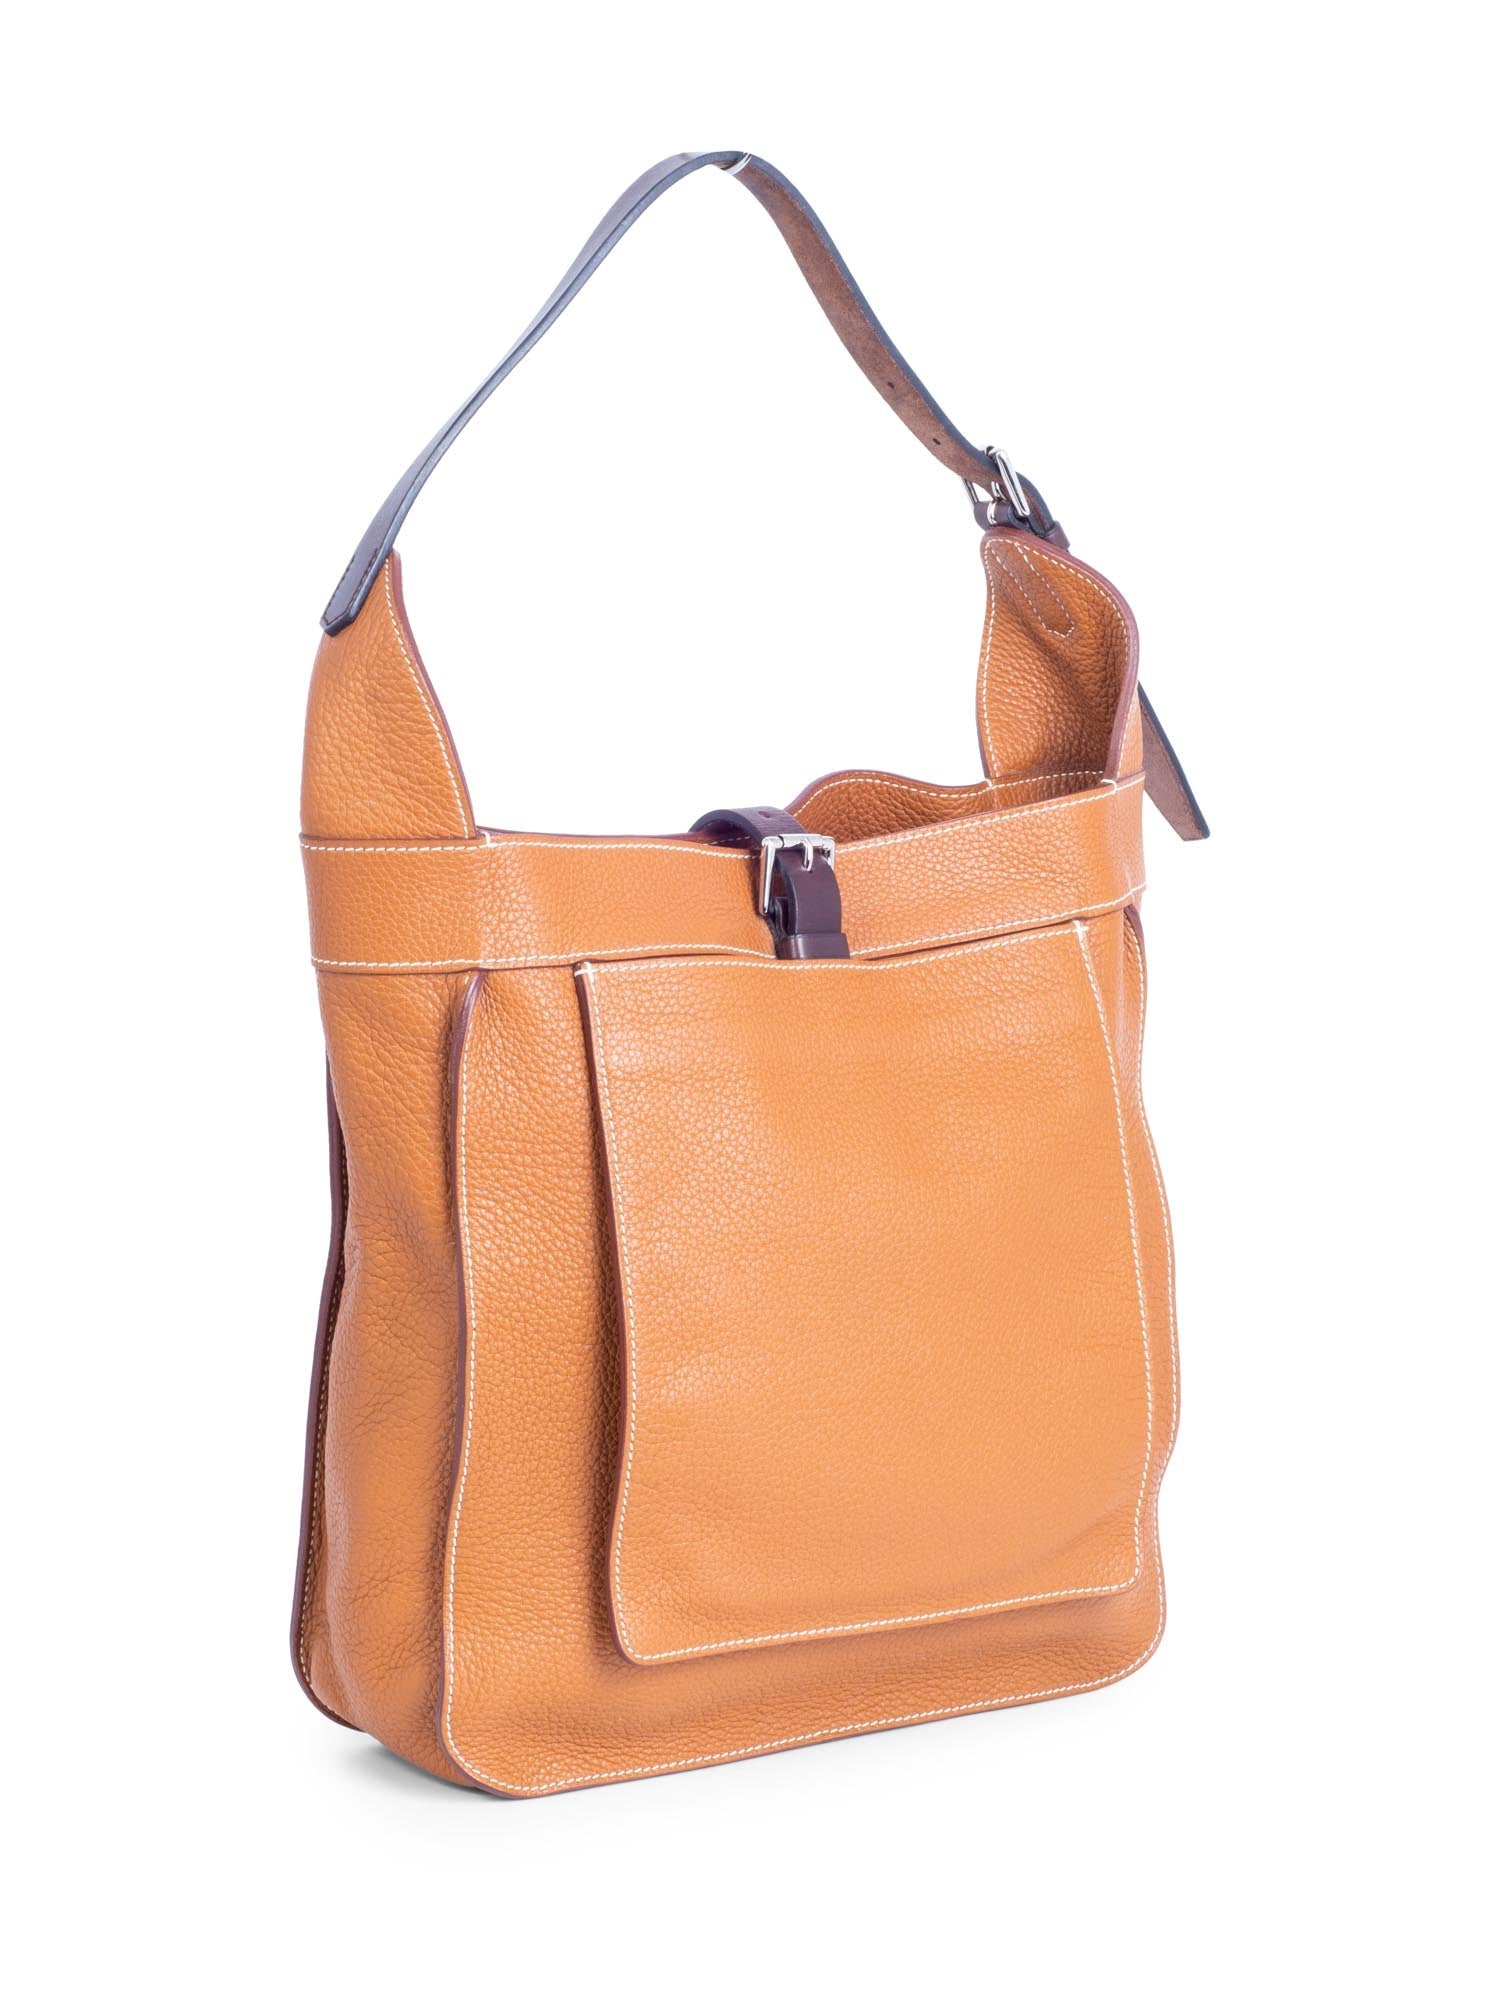 Hermes Togo Leather Hobo Bag Brown-designer resale